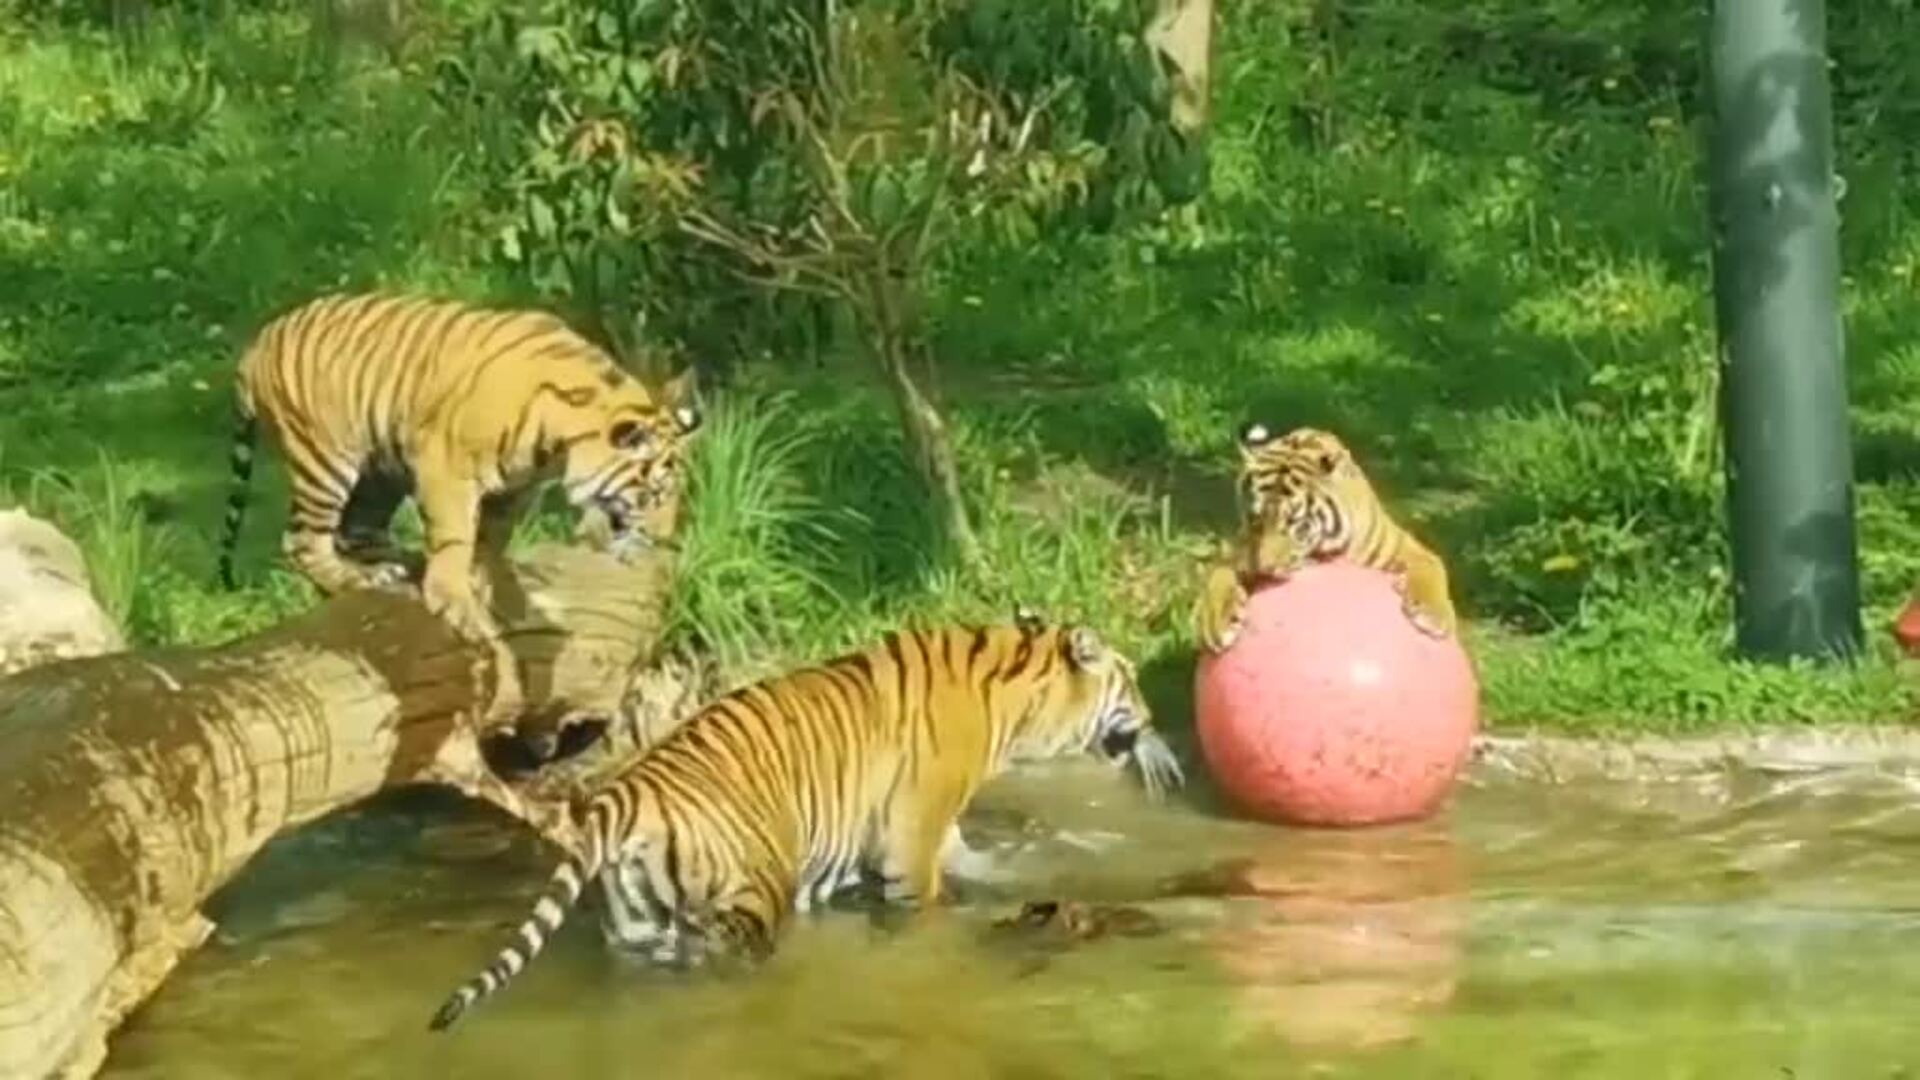 Entrañable imagen de dos cachorros de tigre de Sumatra bañándose por primera vez